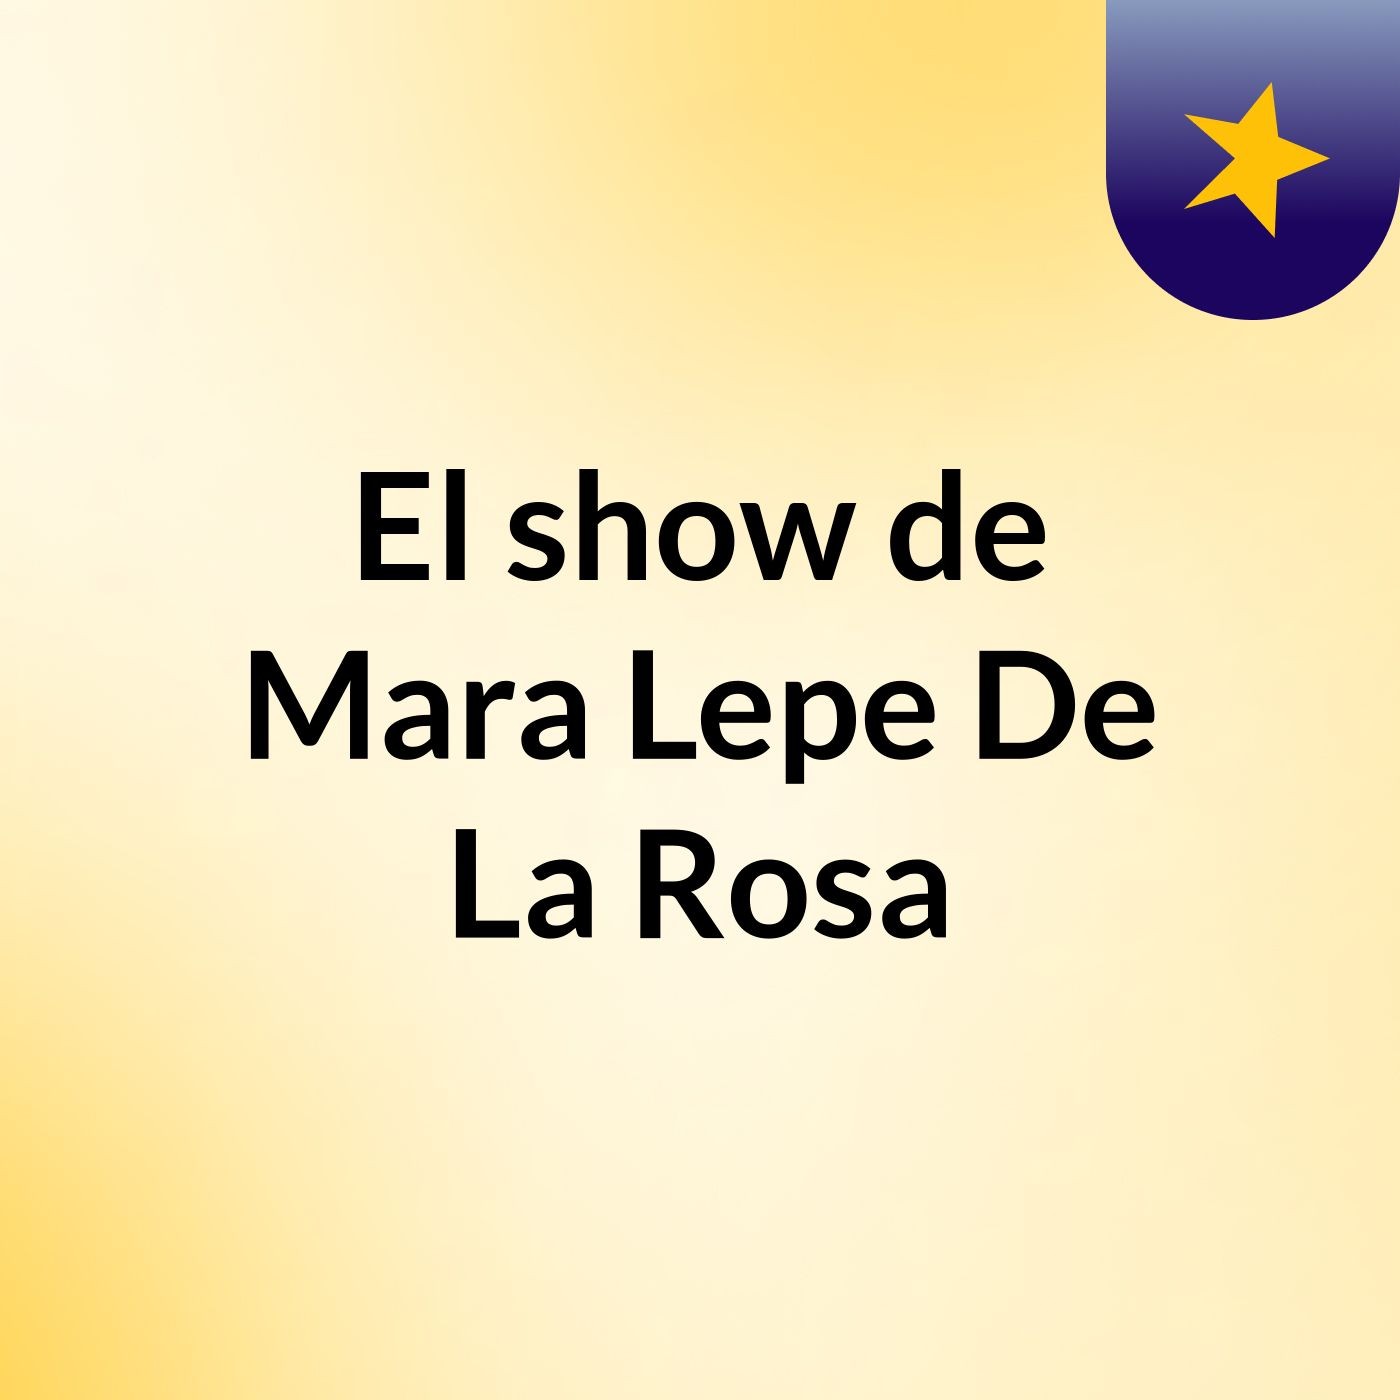 El show de Mara Lepe De La Rosa